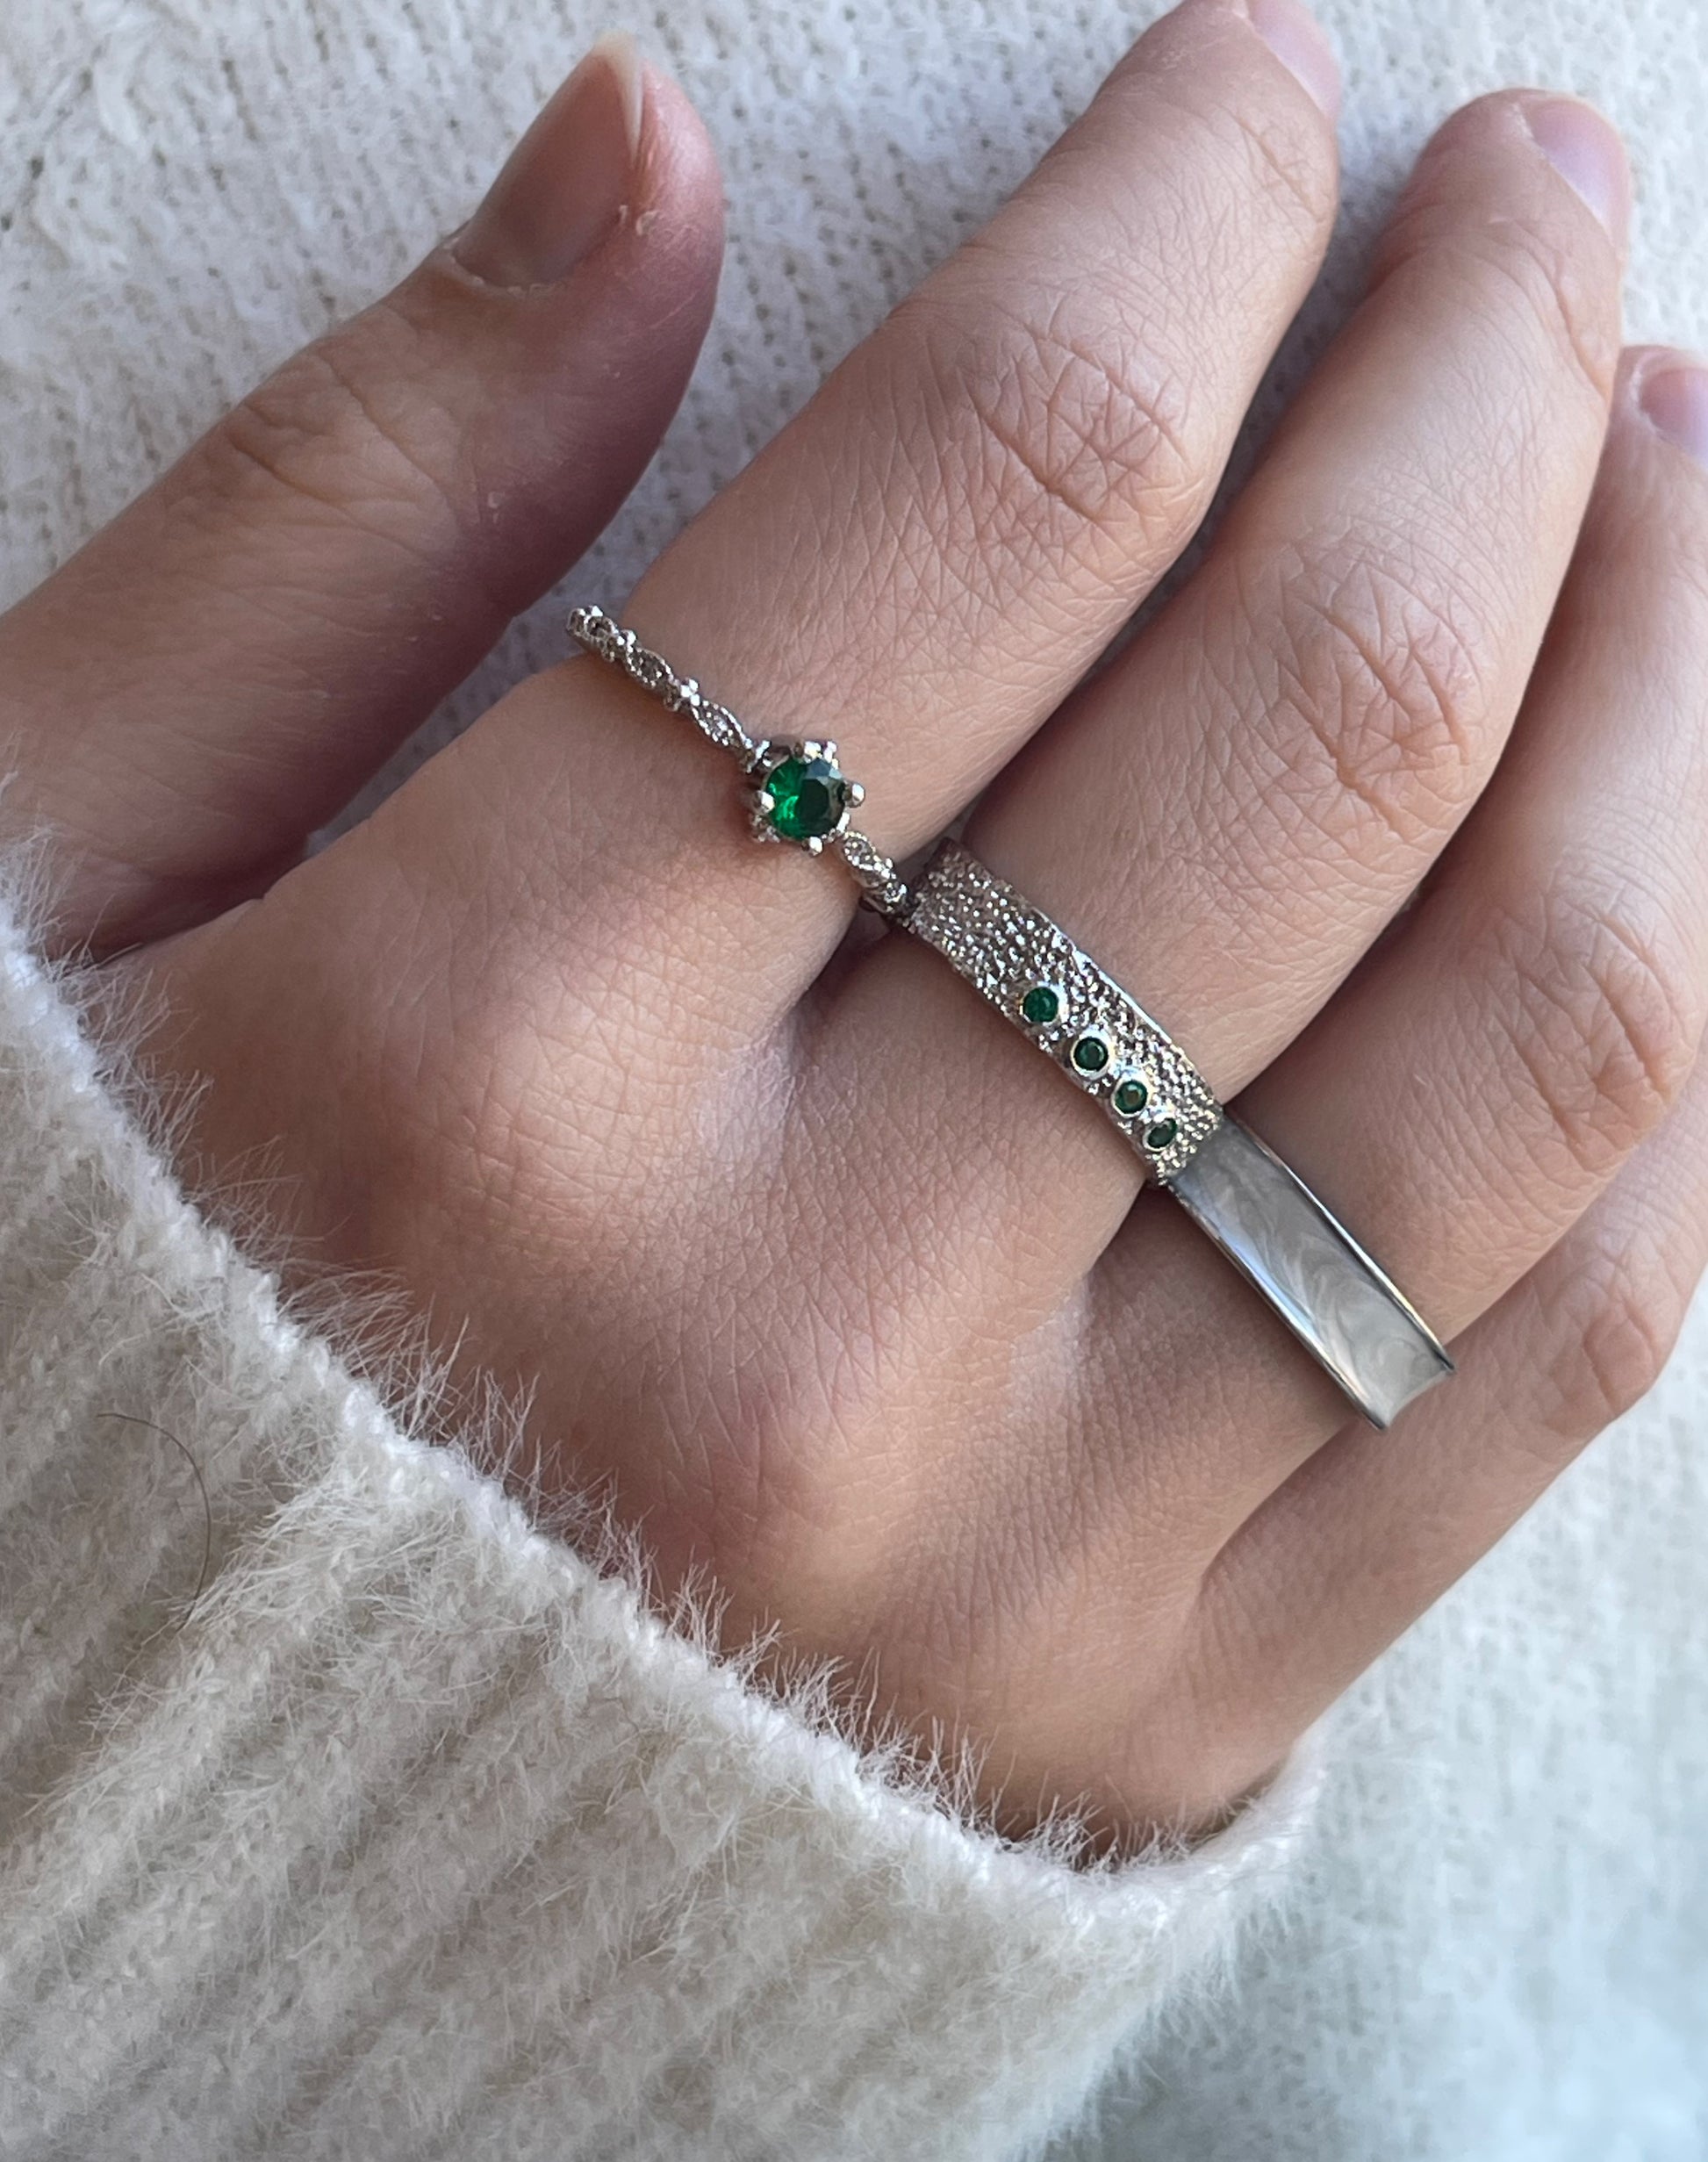 Nova ring i sølv.  Elegant ring med de fineste detaljer samt en flot grøn zircon sten.  Materiale: S925 sterling sølv, zircon Mål: Justerbar, zircon-stenen er 3MM